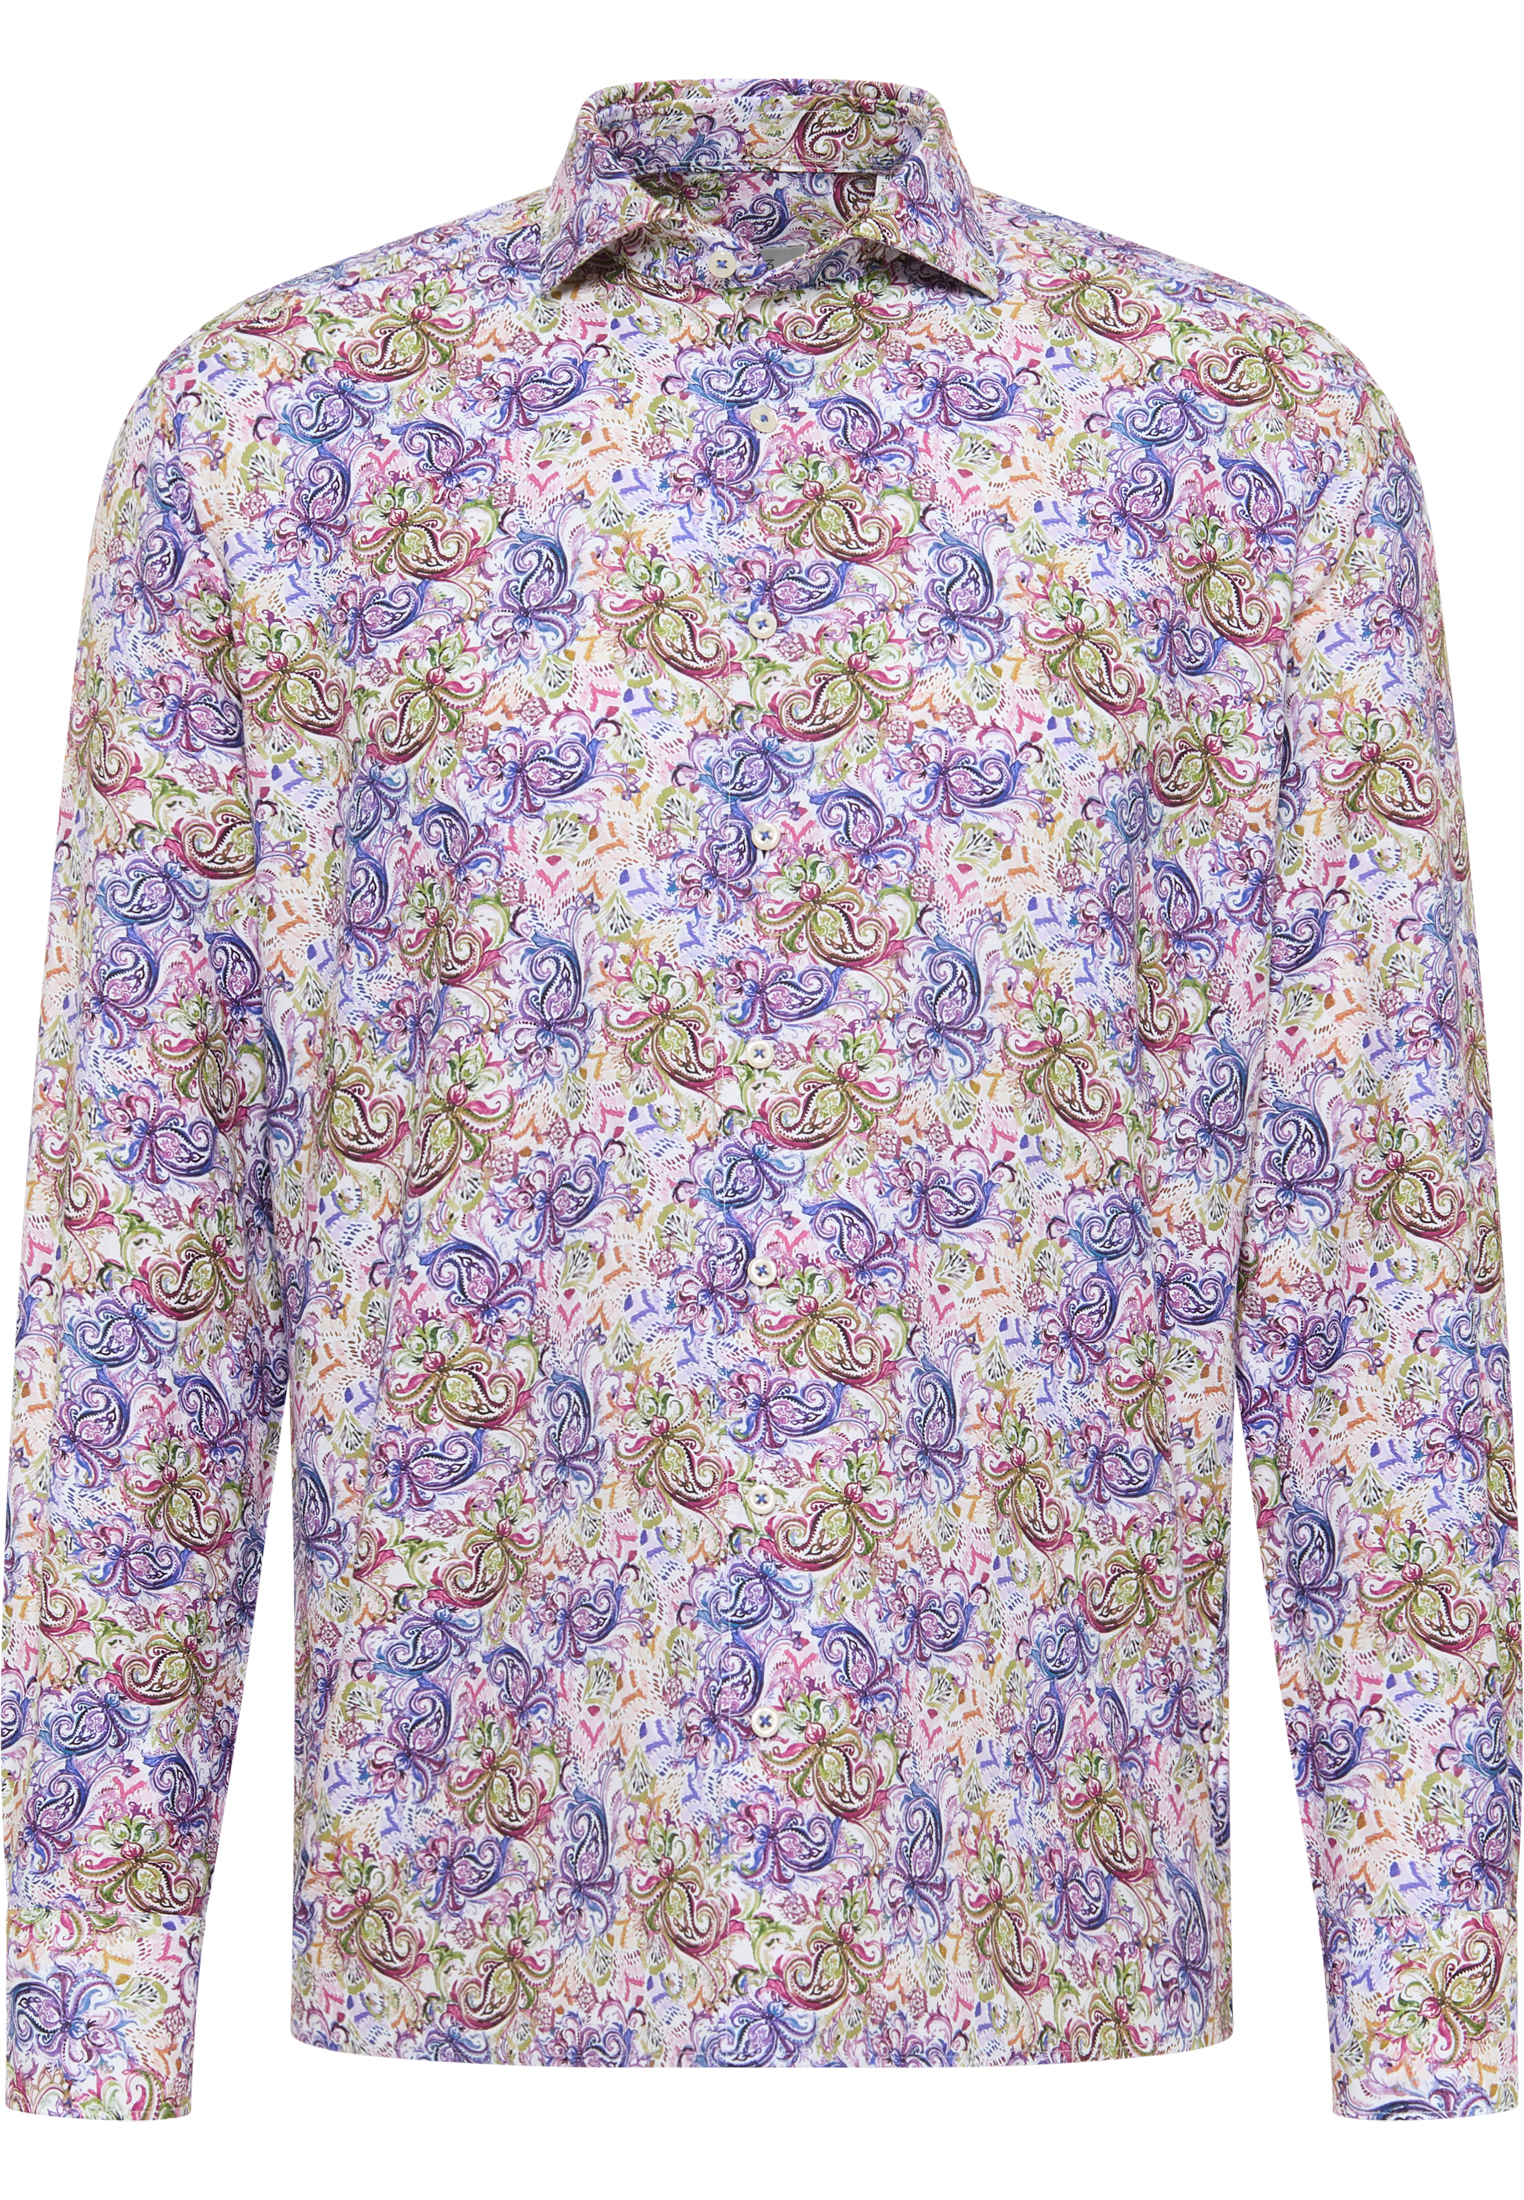 COMFORT FIT Hemd in lila bedruckt